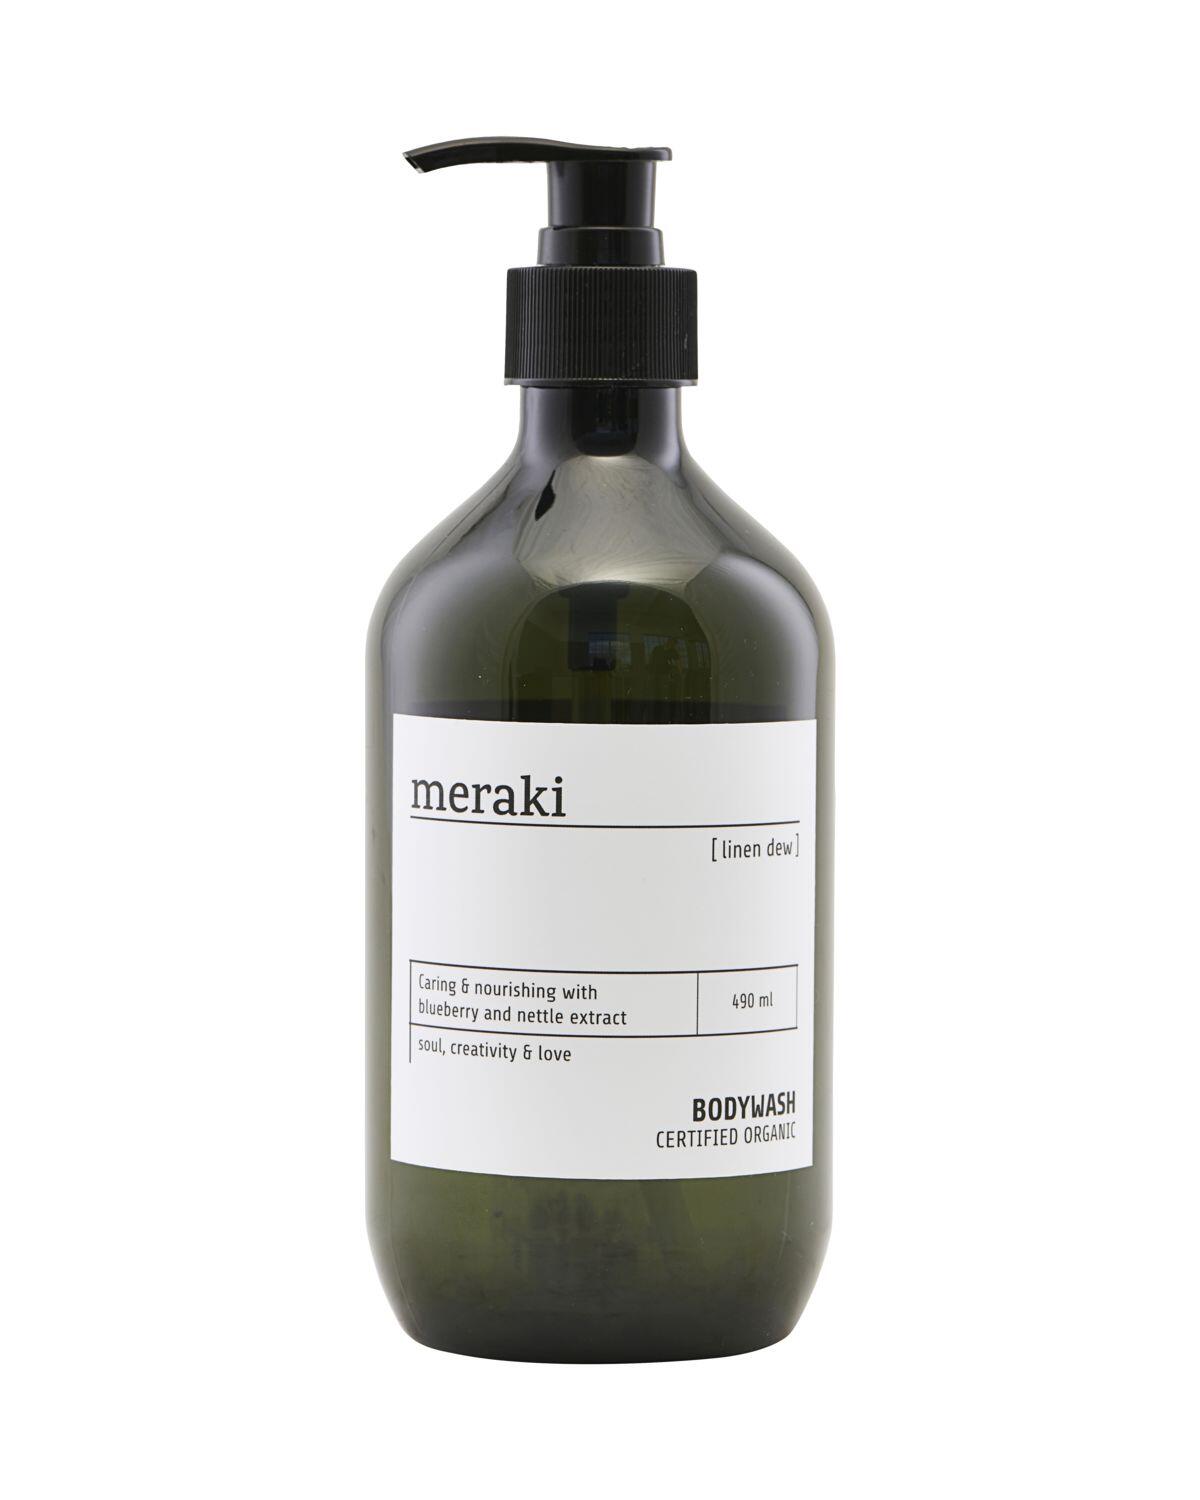 Billede af Meraki Body wash Linen dew - 490 ml hos Duft og Natur